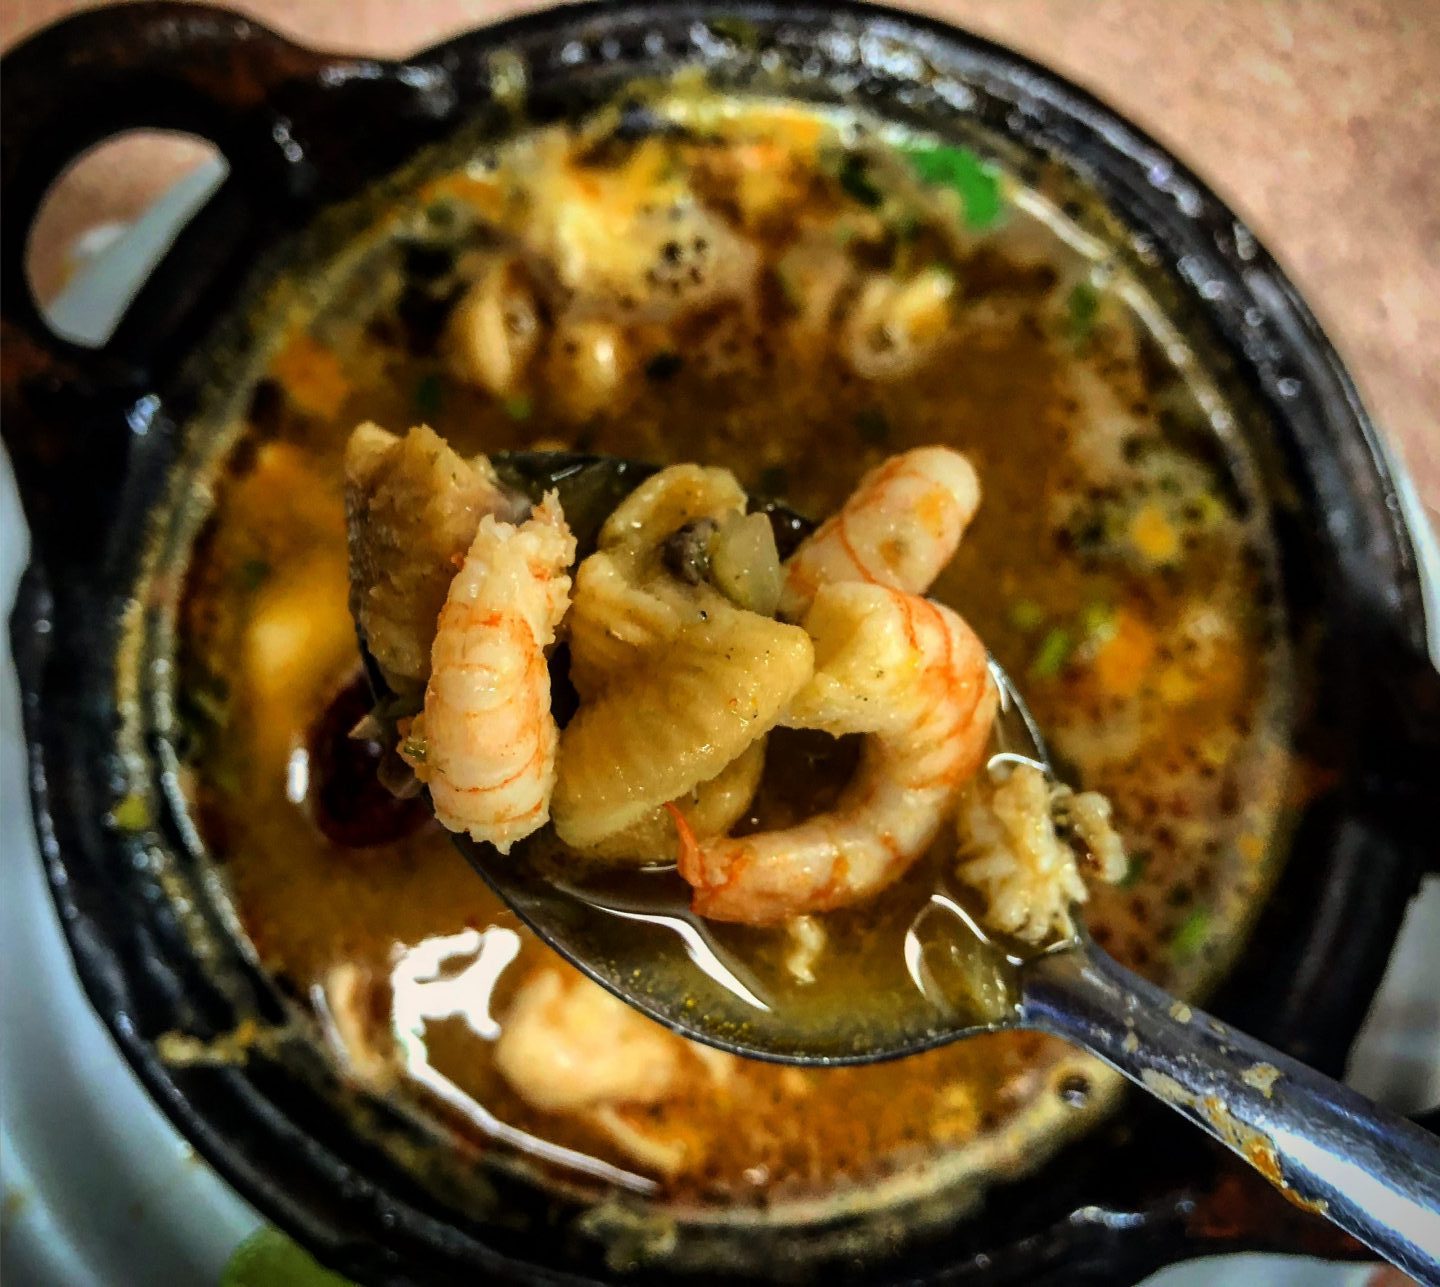 Receta de sopa mexicana de mariscos: un abrazo en días de frío -o cruda-